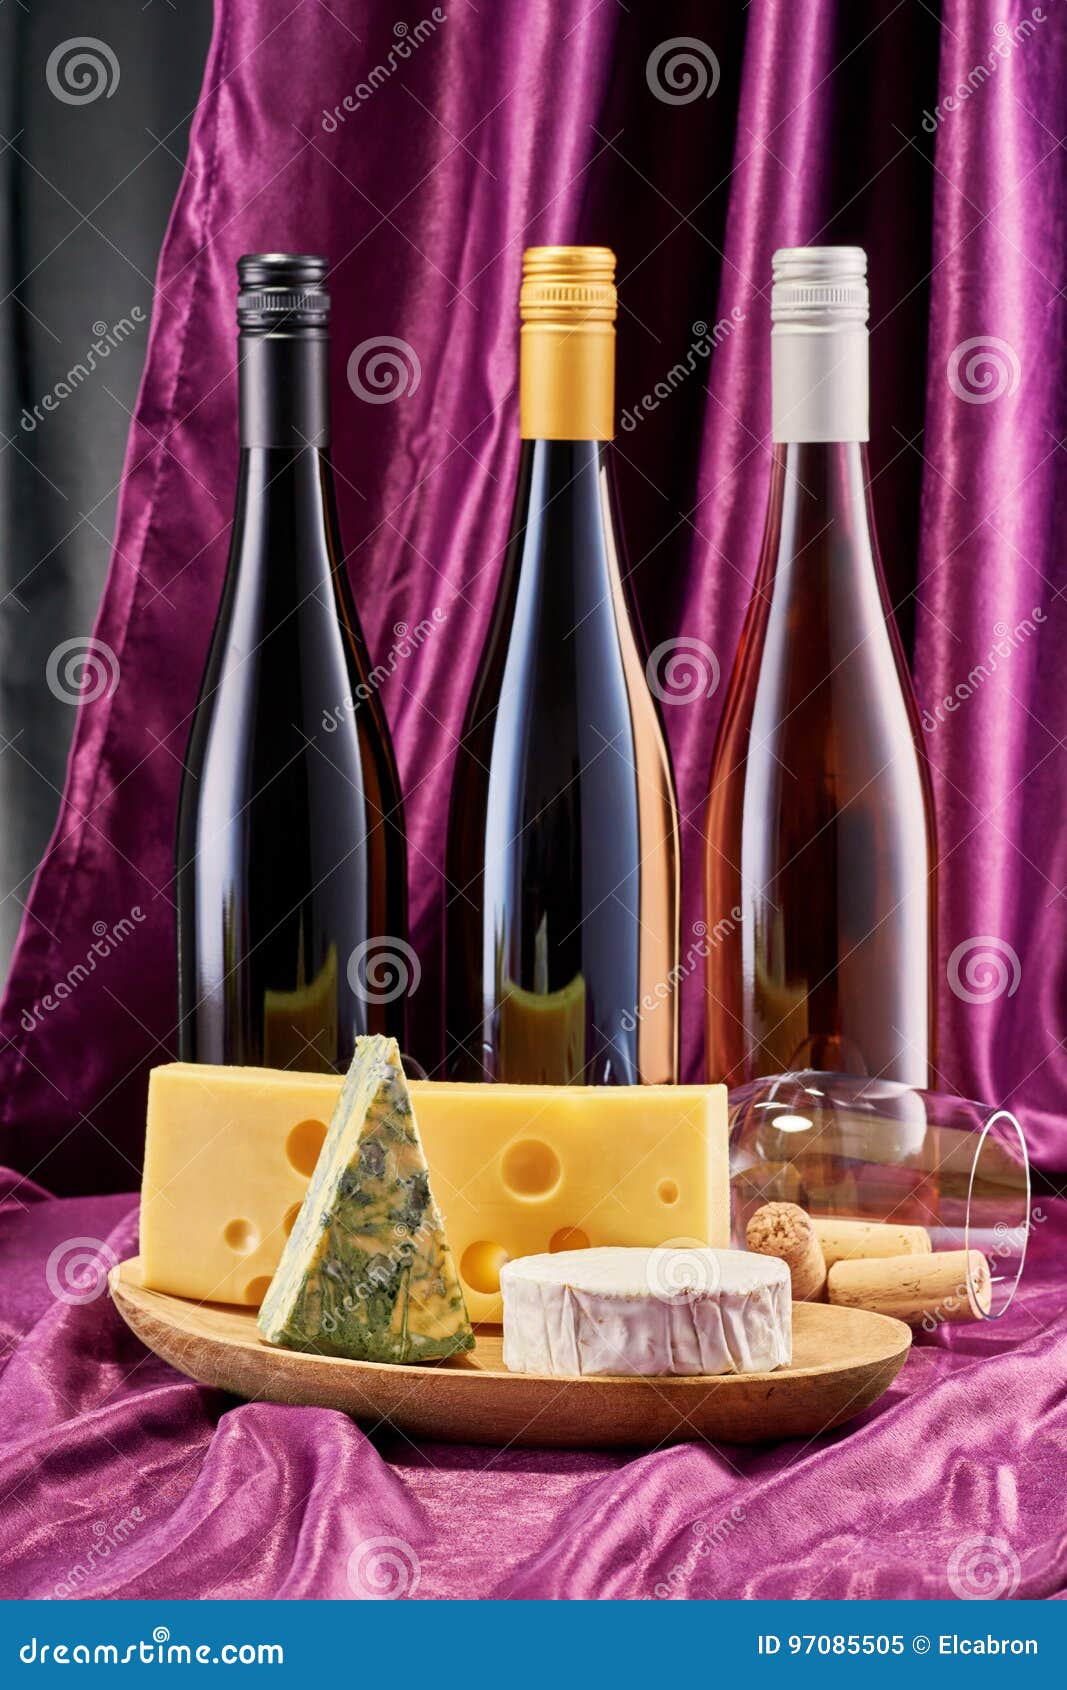 И вина 3 бутылки. Три бутылки вина с сыром. Вино с сыром. Цветы вино сыр. Вино с сыром три бутылки.